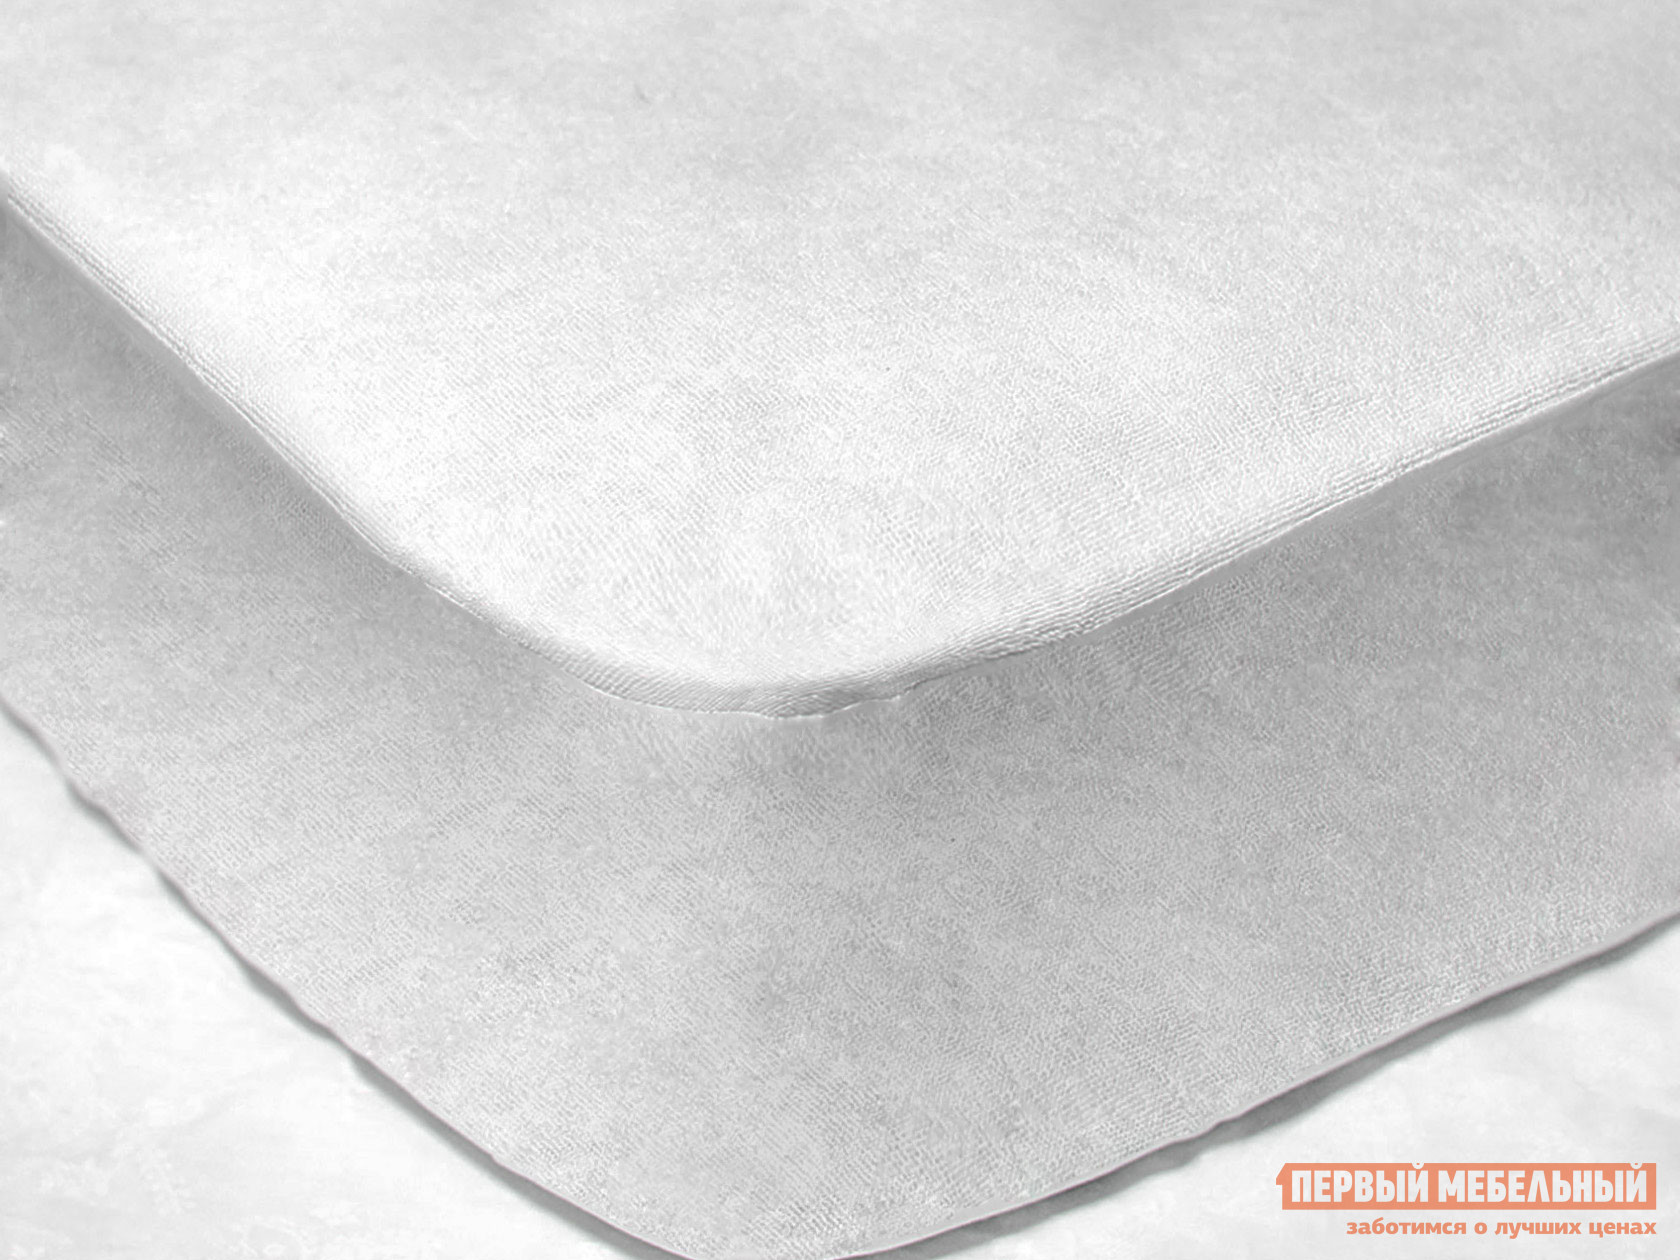 Чехол для матраса  Фулл протекшн с бортом Белый махровый, 900 Х 2000 мм от Первый Мебельный